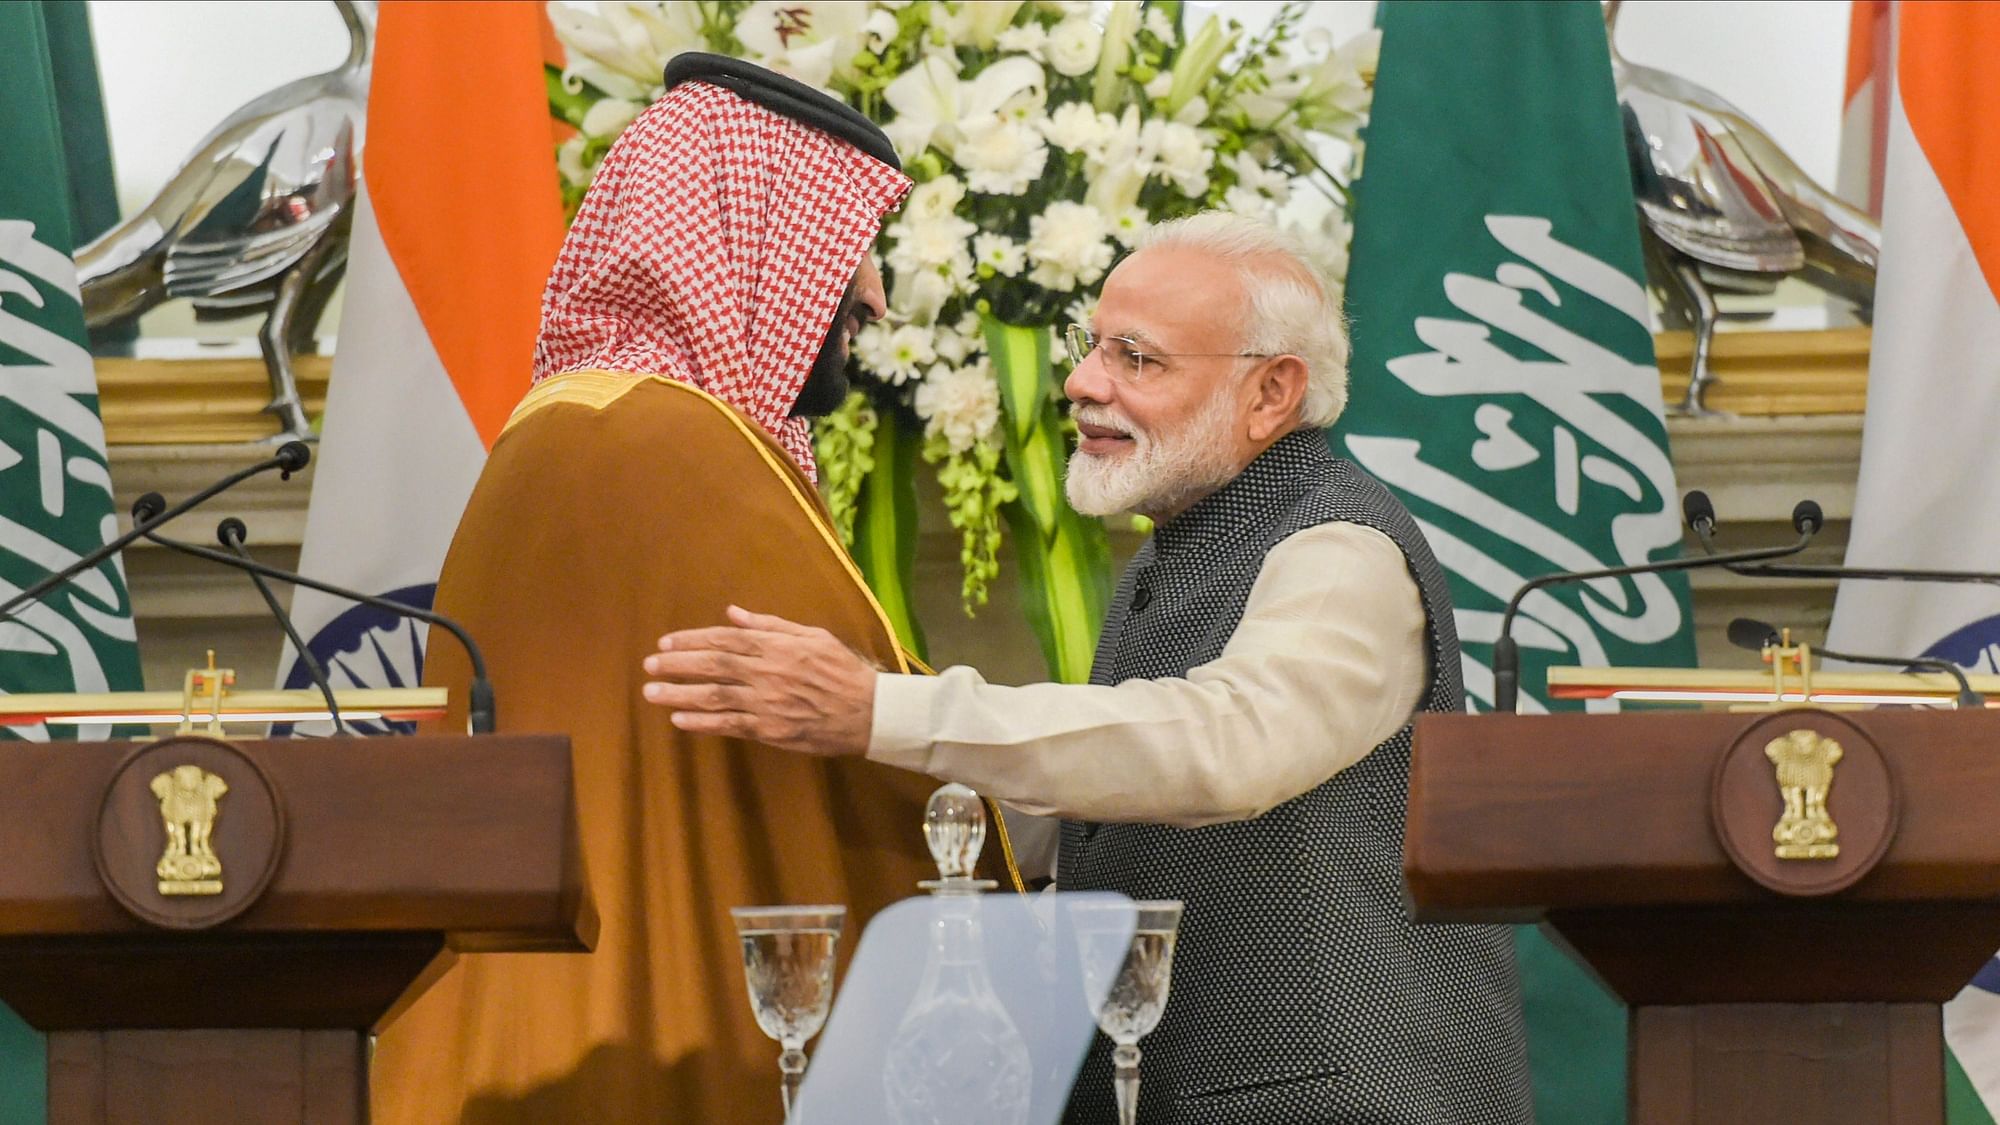 सऊदी अरब भारत की प्रतिष्ठा को तवज्जो देता है लेकिन उससे बहुत ज्यादा उम्मीद बेमानी&nbsp;